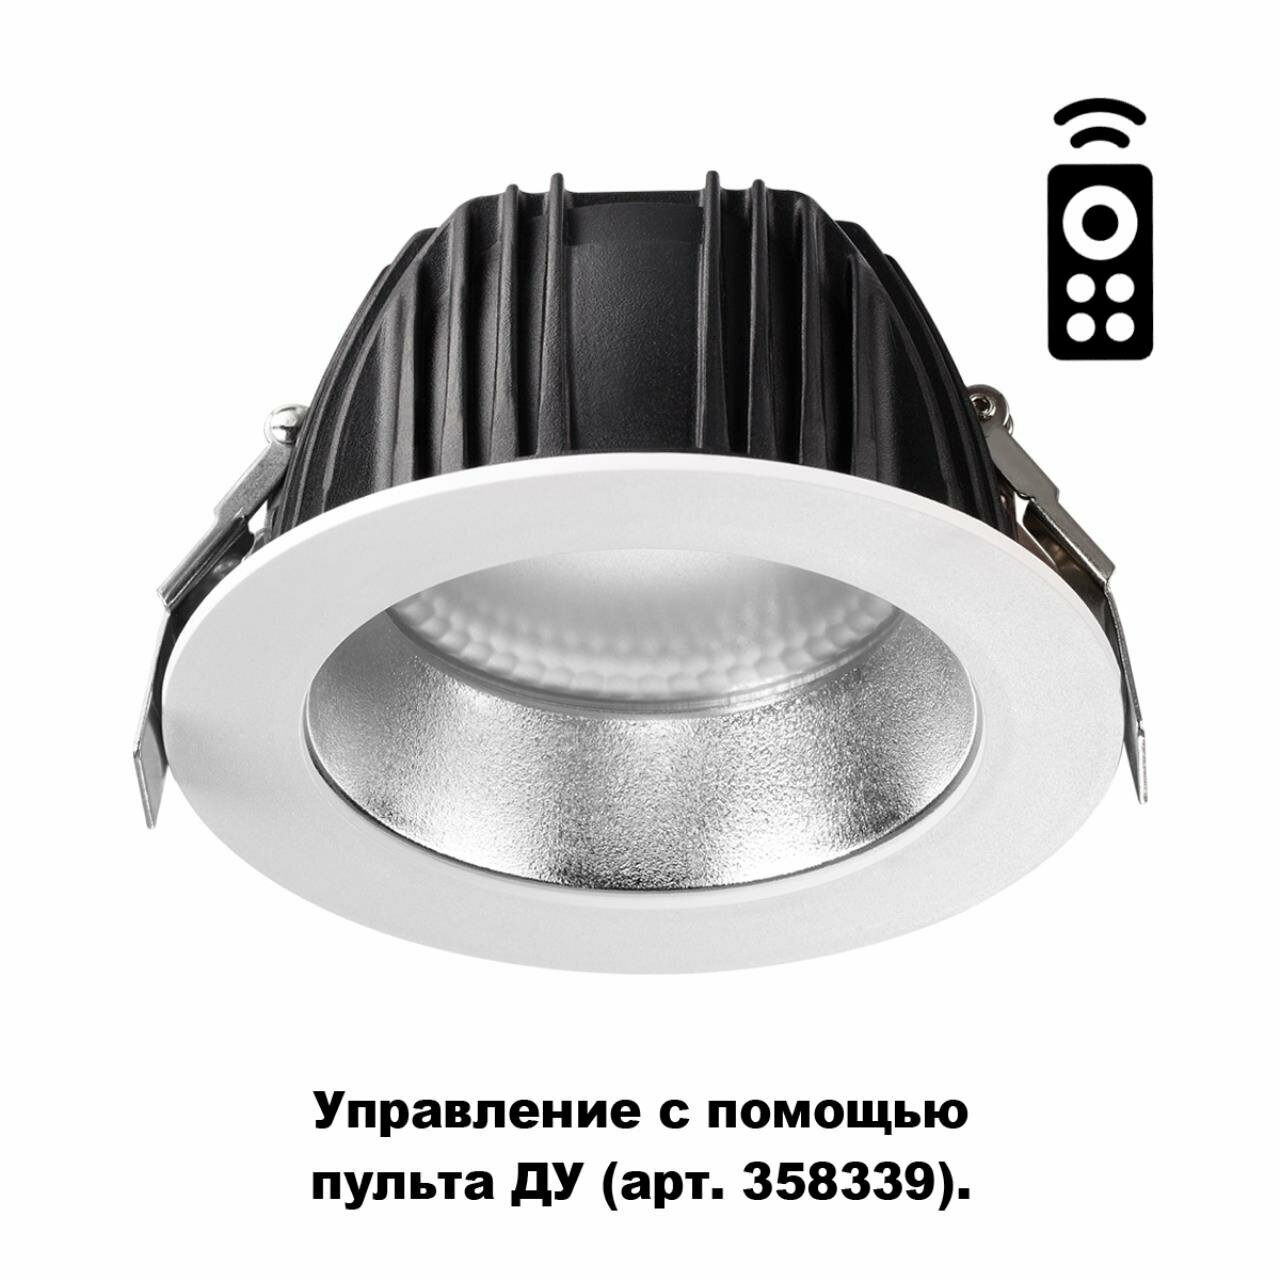 Встраиваемый диммируемый светильник на пульте управления со сменой цветовой температуры Novotech GESTION 358335